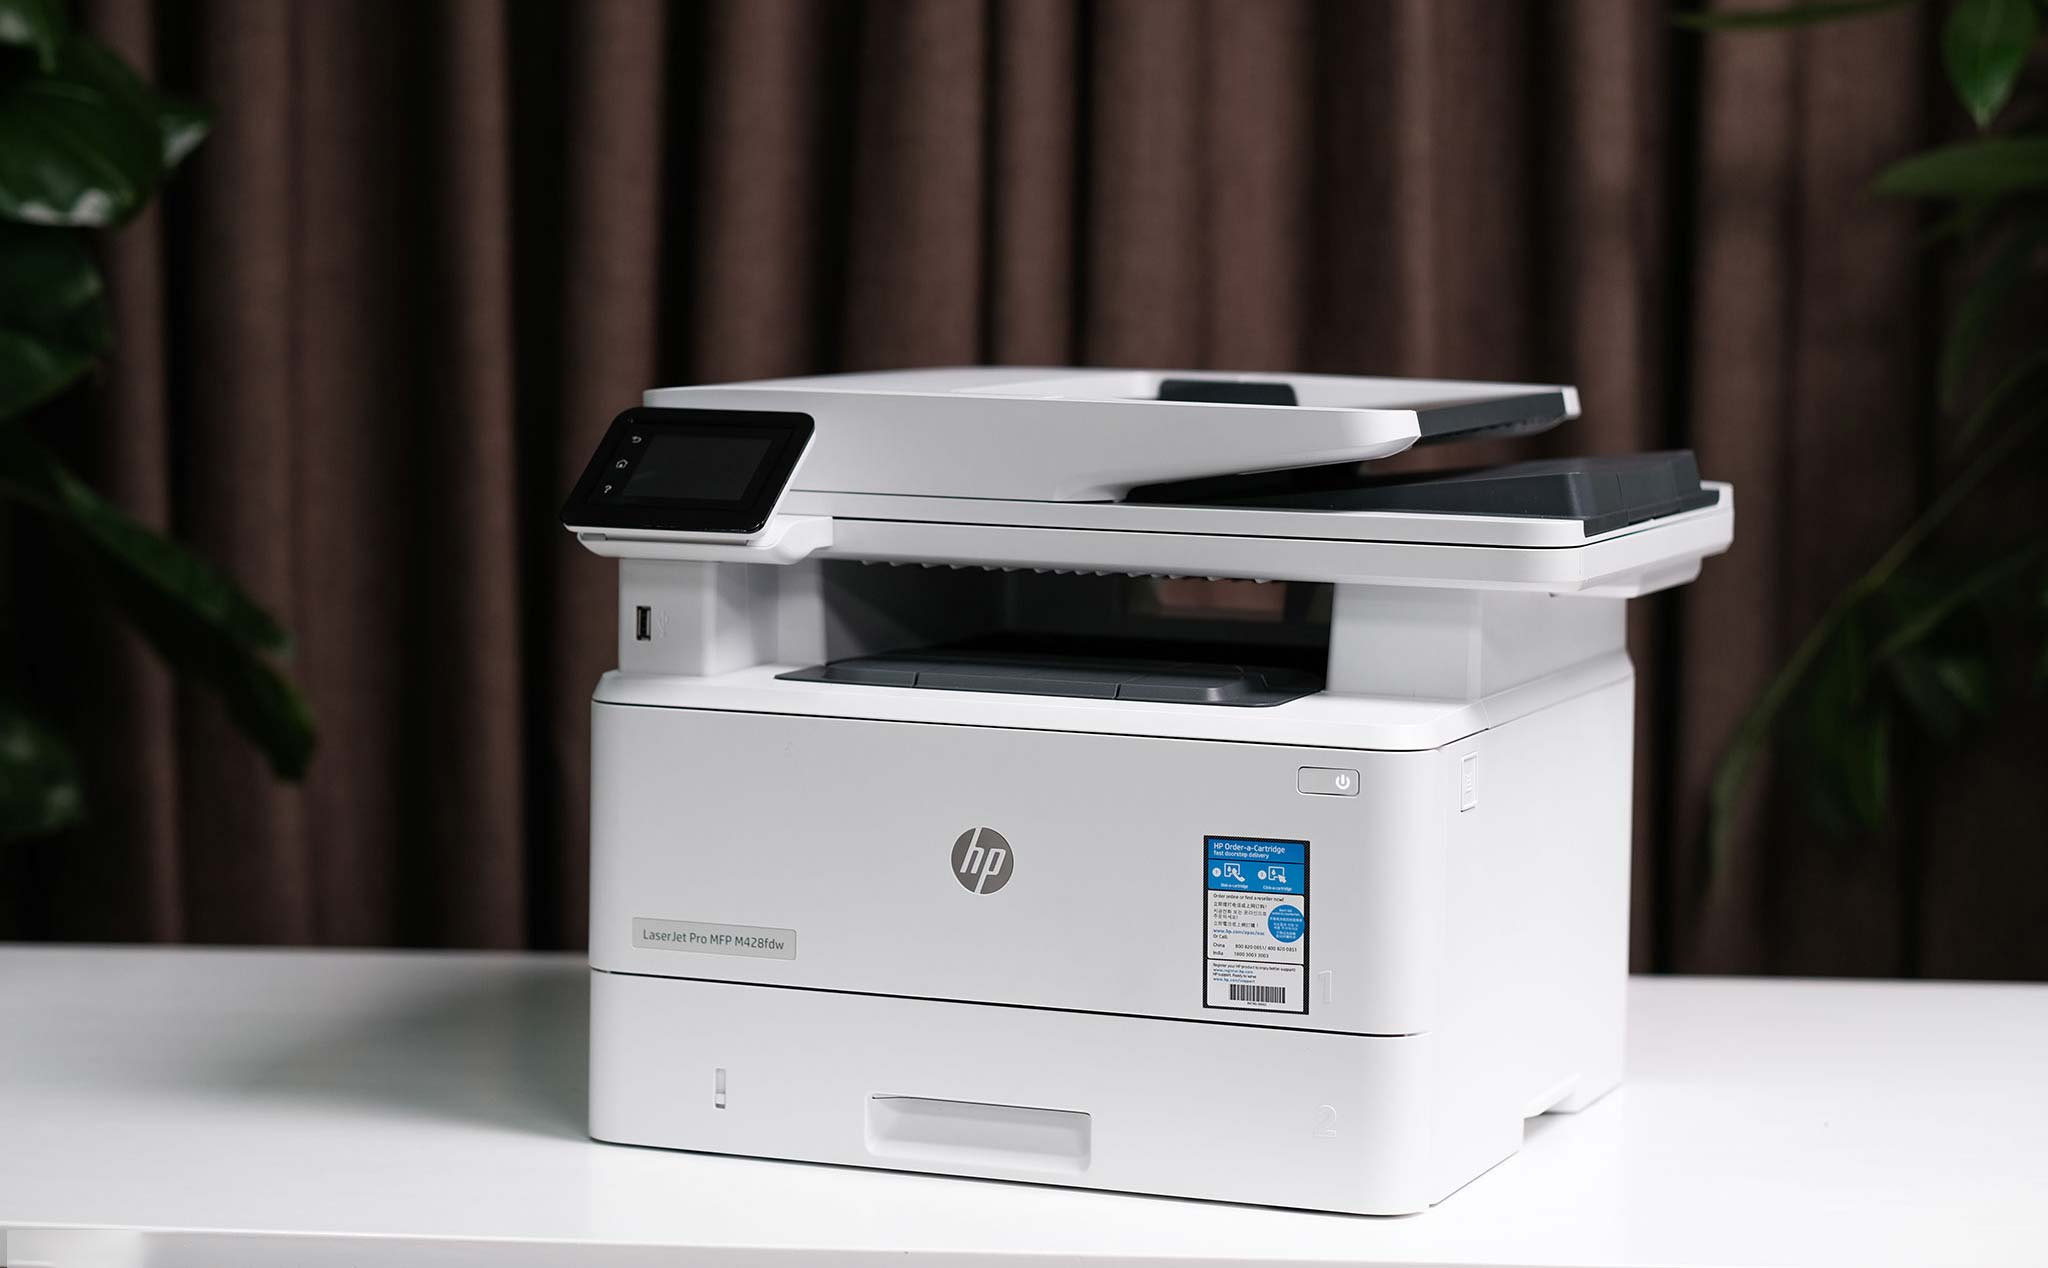 Trên tay máy in HP LaserJet Pro MFP M428: lựa chọn tốt cho doanh nghiệp